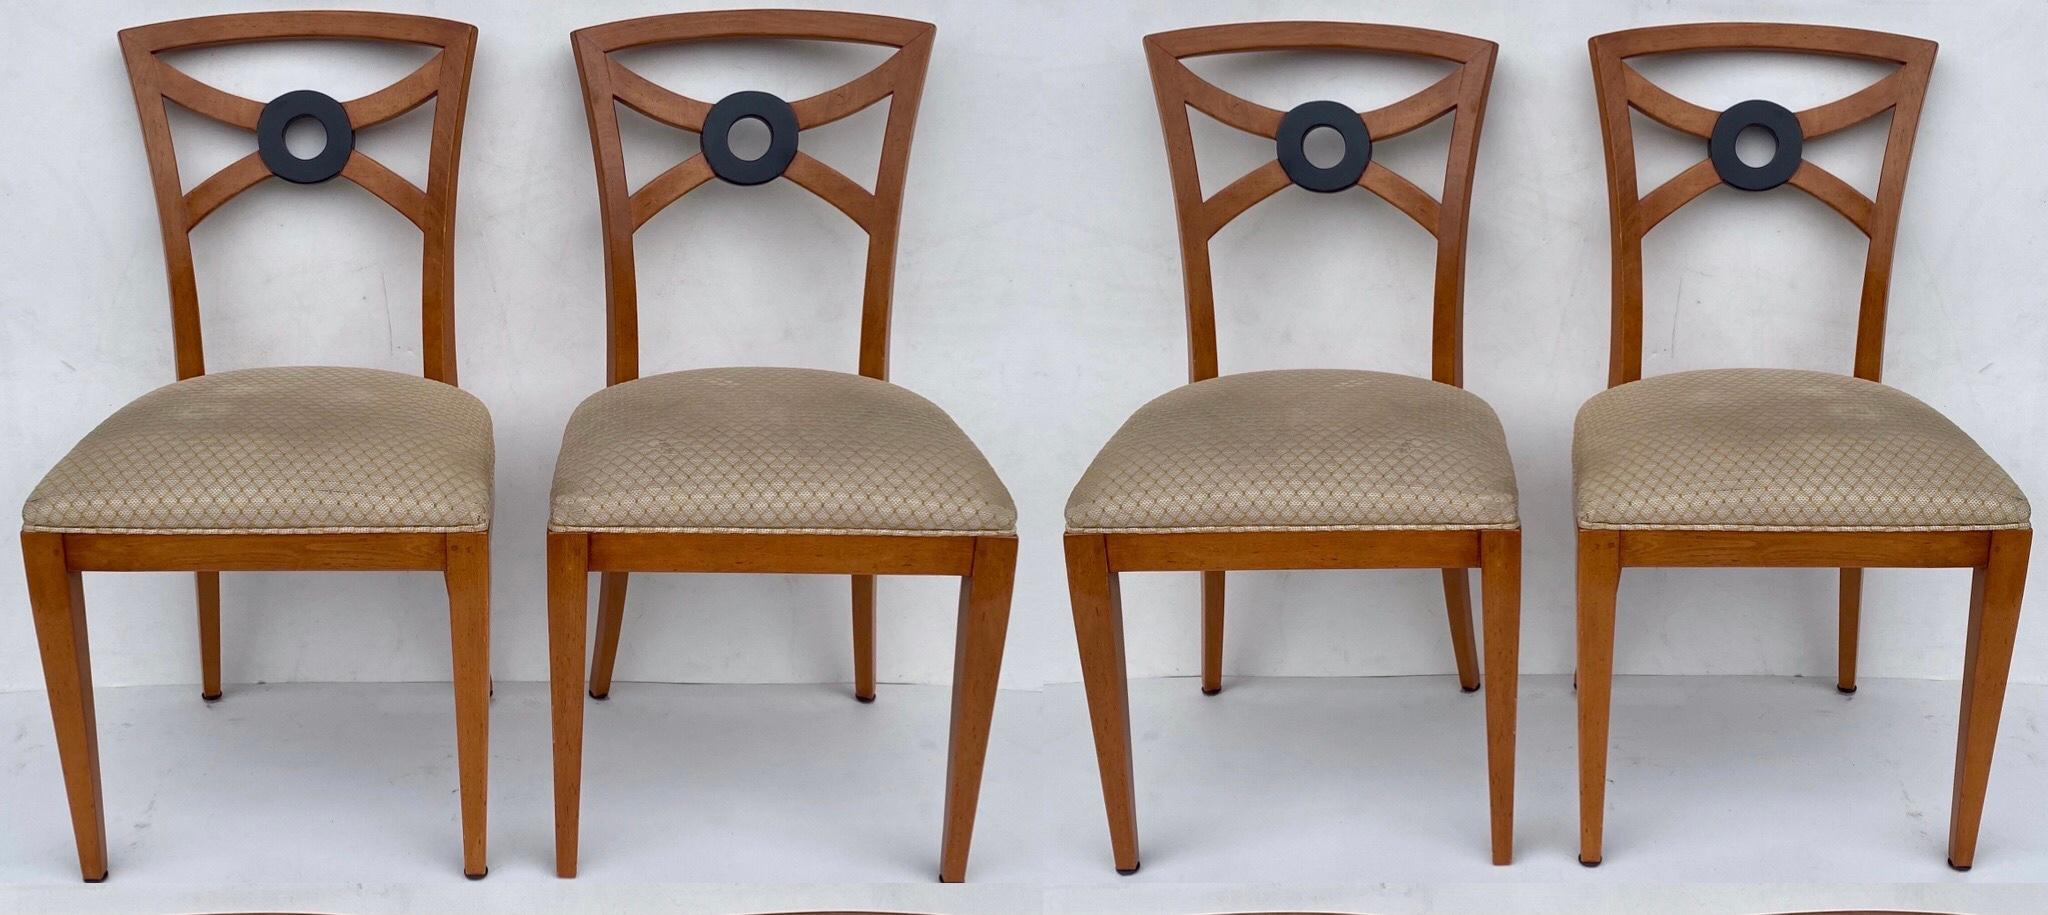 william switzer chairs